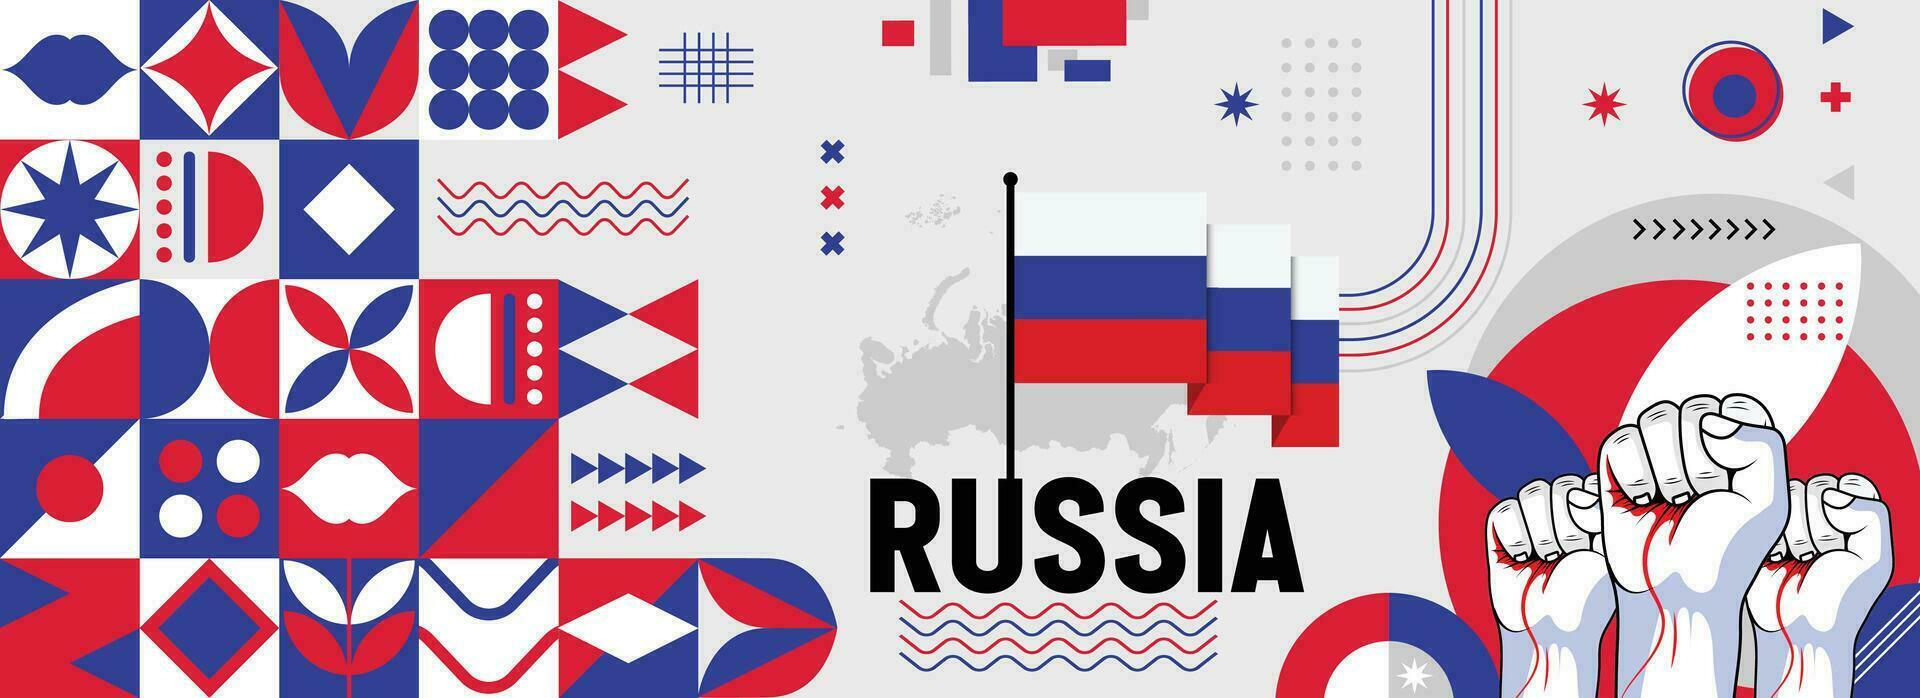 Rusia nacional o independencia día bandera para país celebracion. bandera y mapa de ruso con elevado puños moderno retro diseño con tiporgafia resumen geométrico iconos vector ilustración